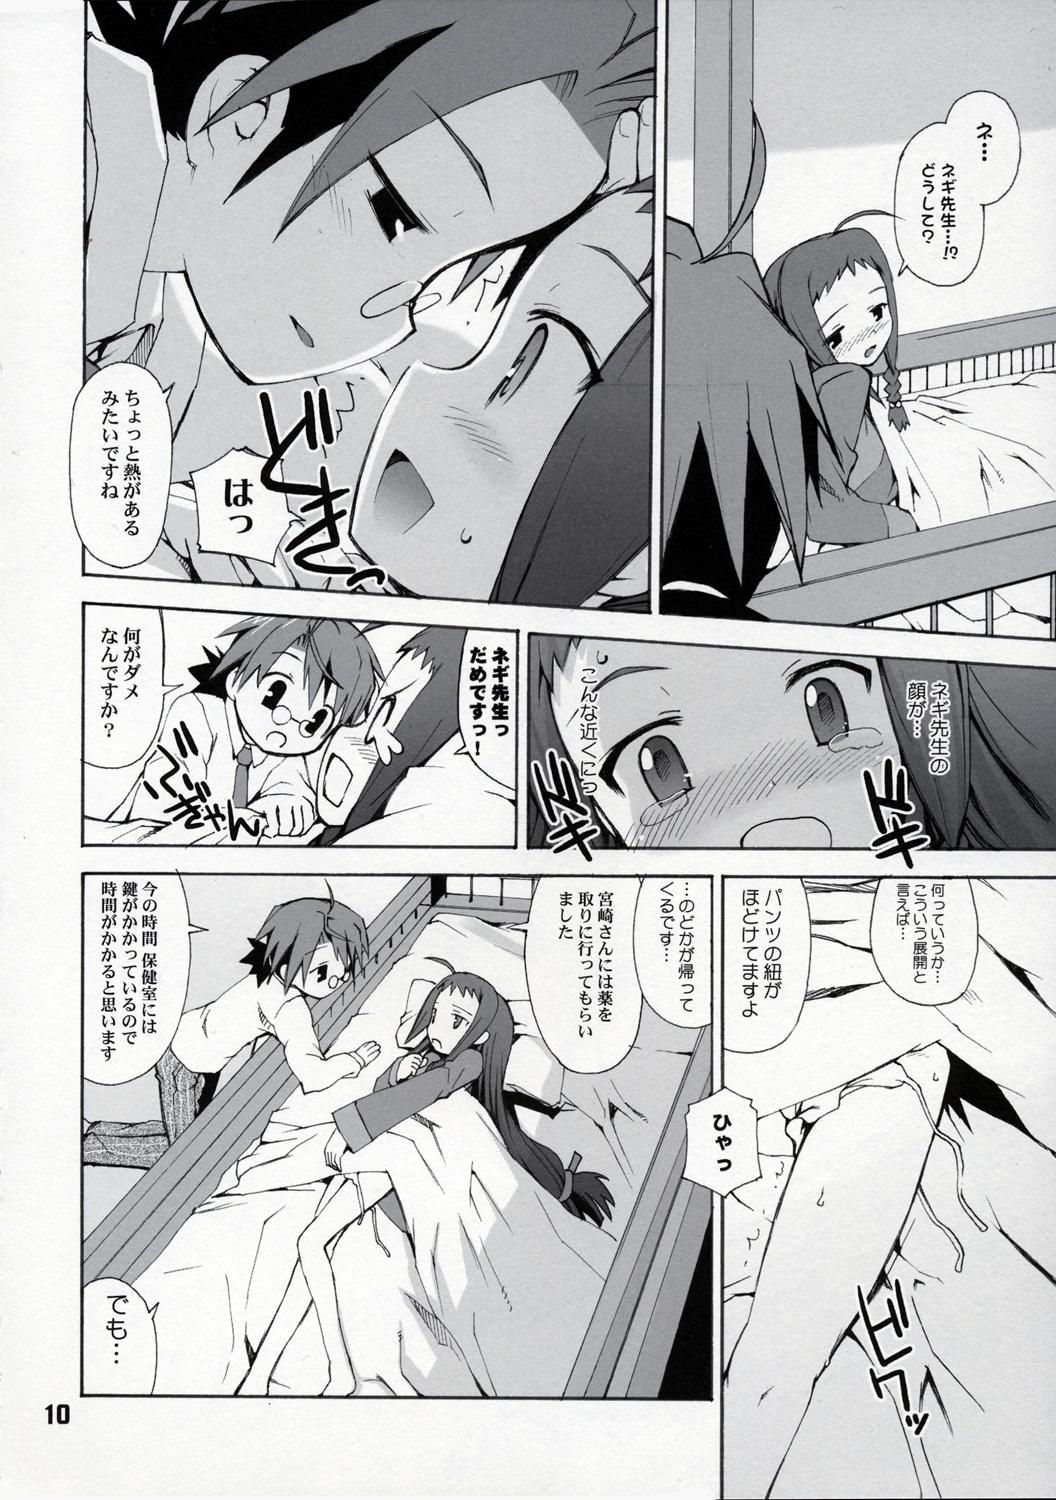 Ass Fucking Practice Bigi Naru Pua! - Mahou sensei negima Curious - Page 9